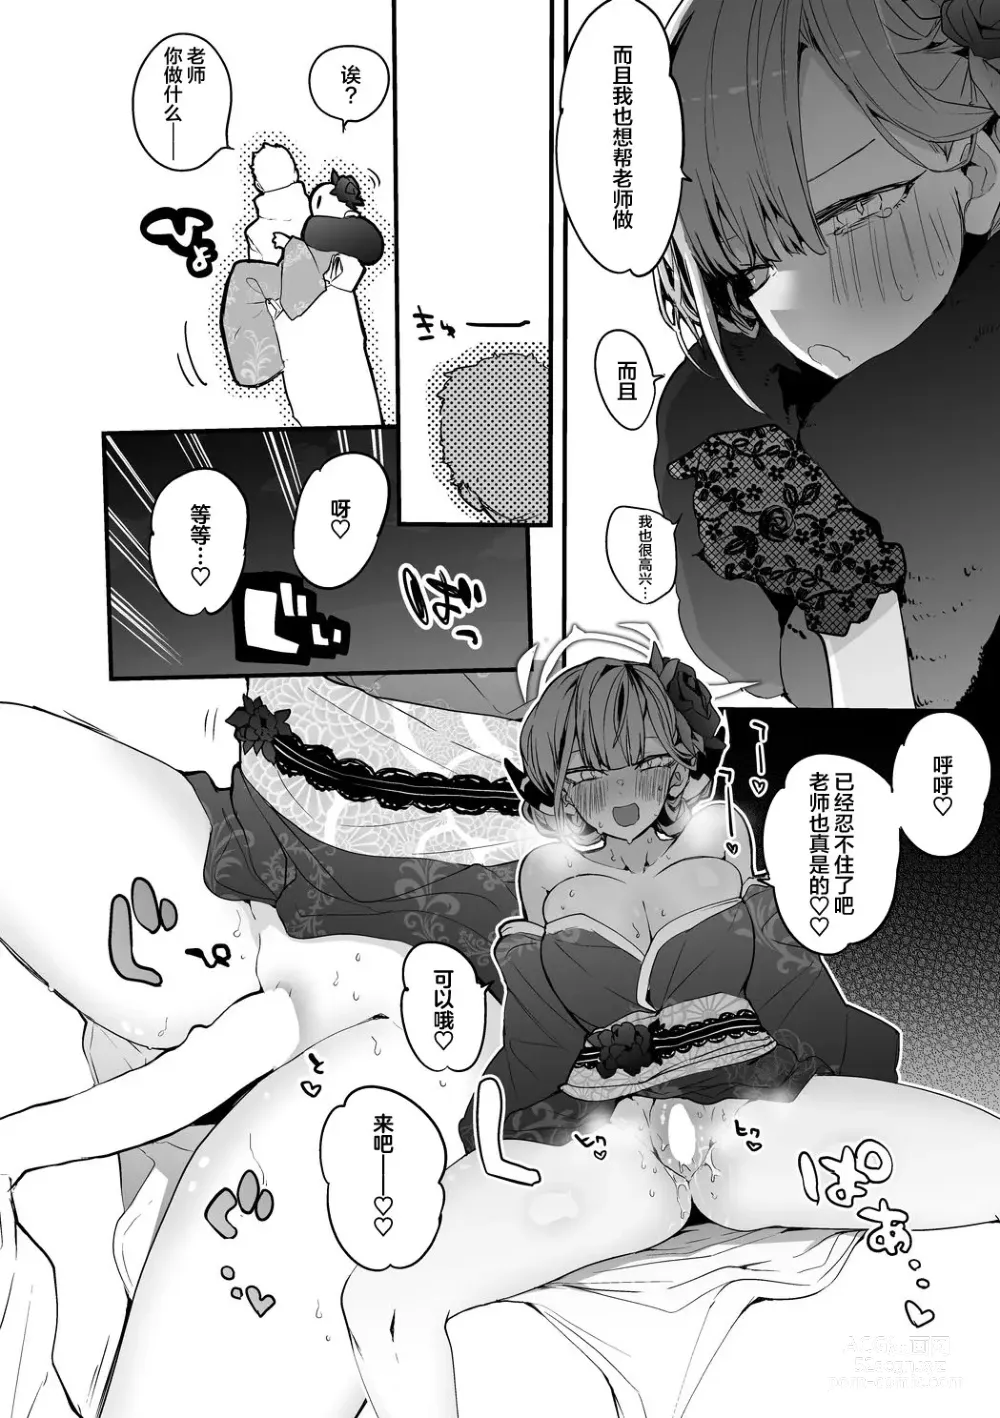 Page 53 of doujinshi Seishun x Ero x Matome Hon